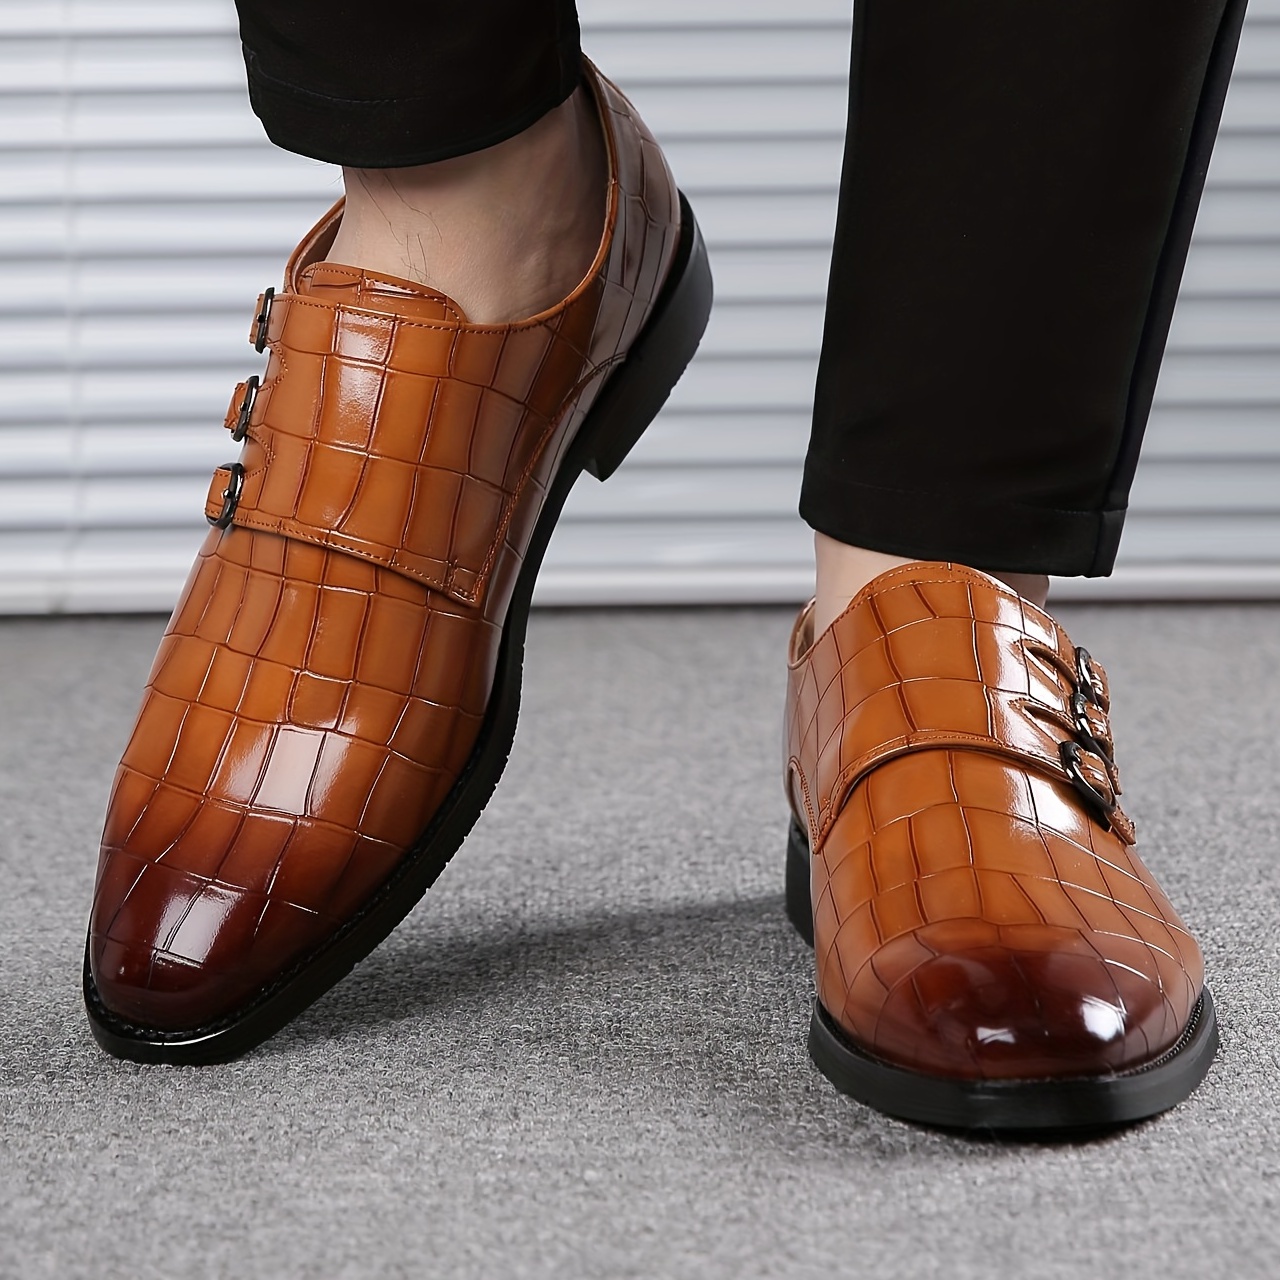 pantofi de rochie casual eleganti pentru bărbați, cu imprimeu în carouri, cu cataramă livrare gratuită pentru articolele expediate de la temu